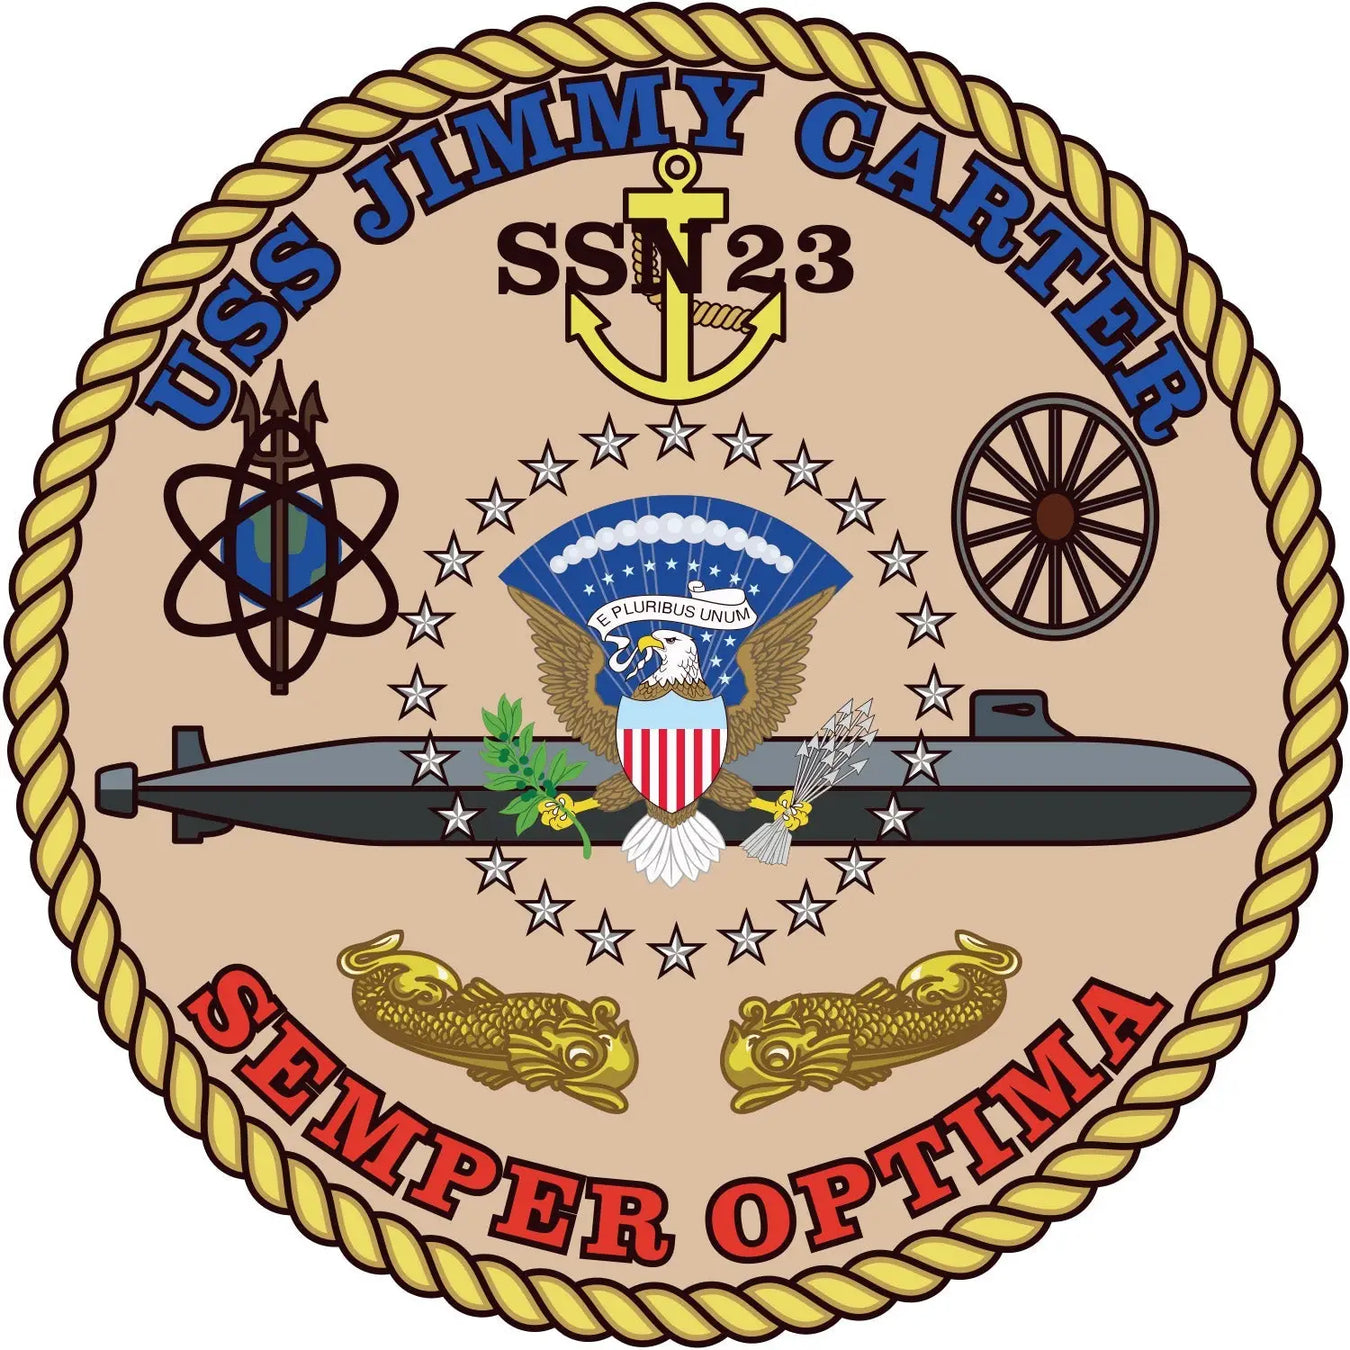 USS Jimmy Carter (SSN-23)